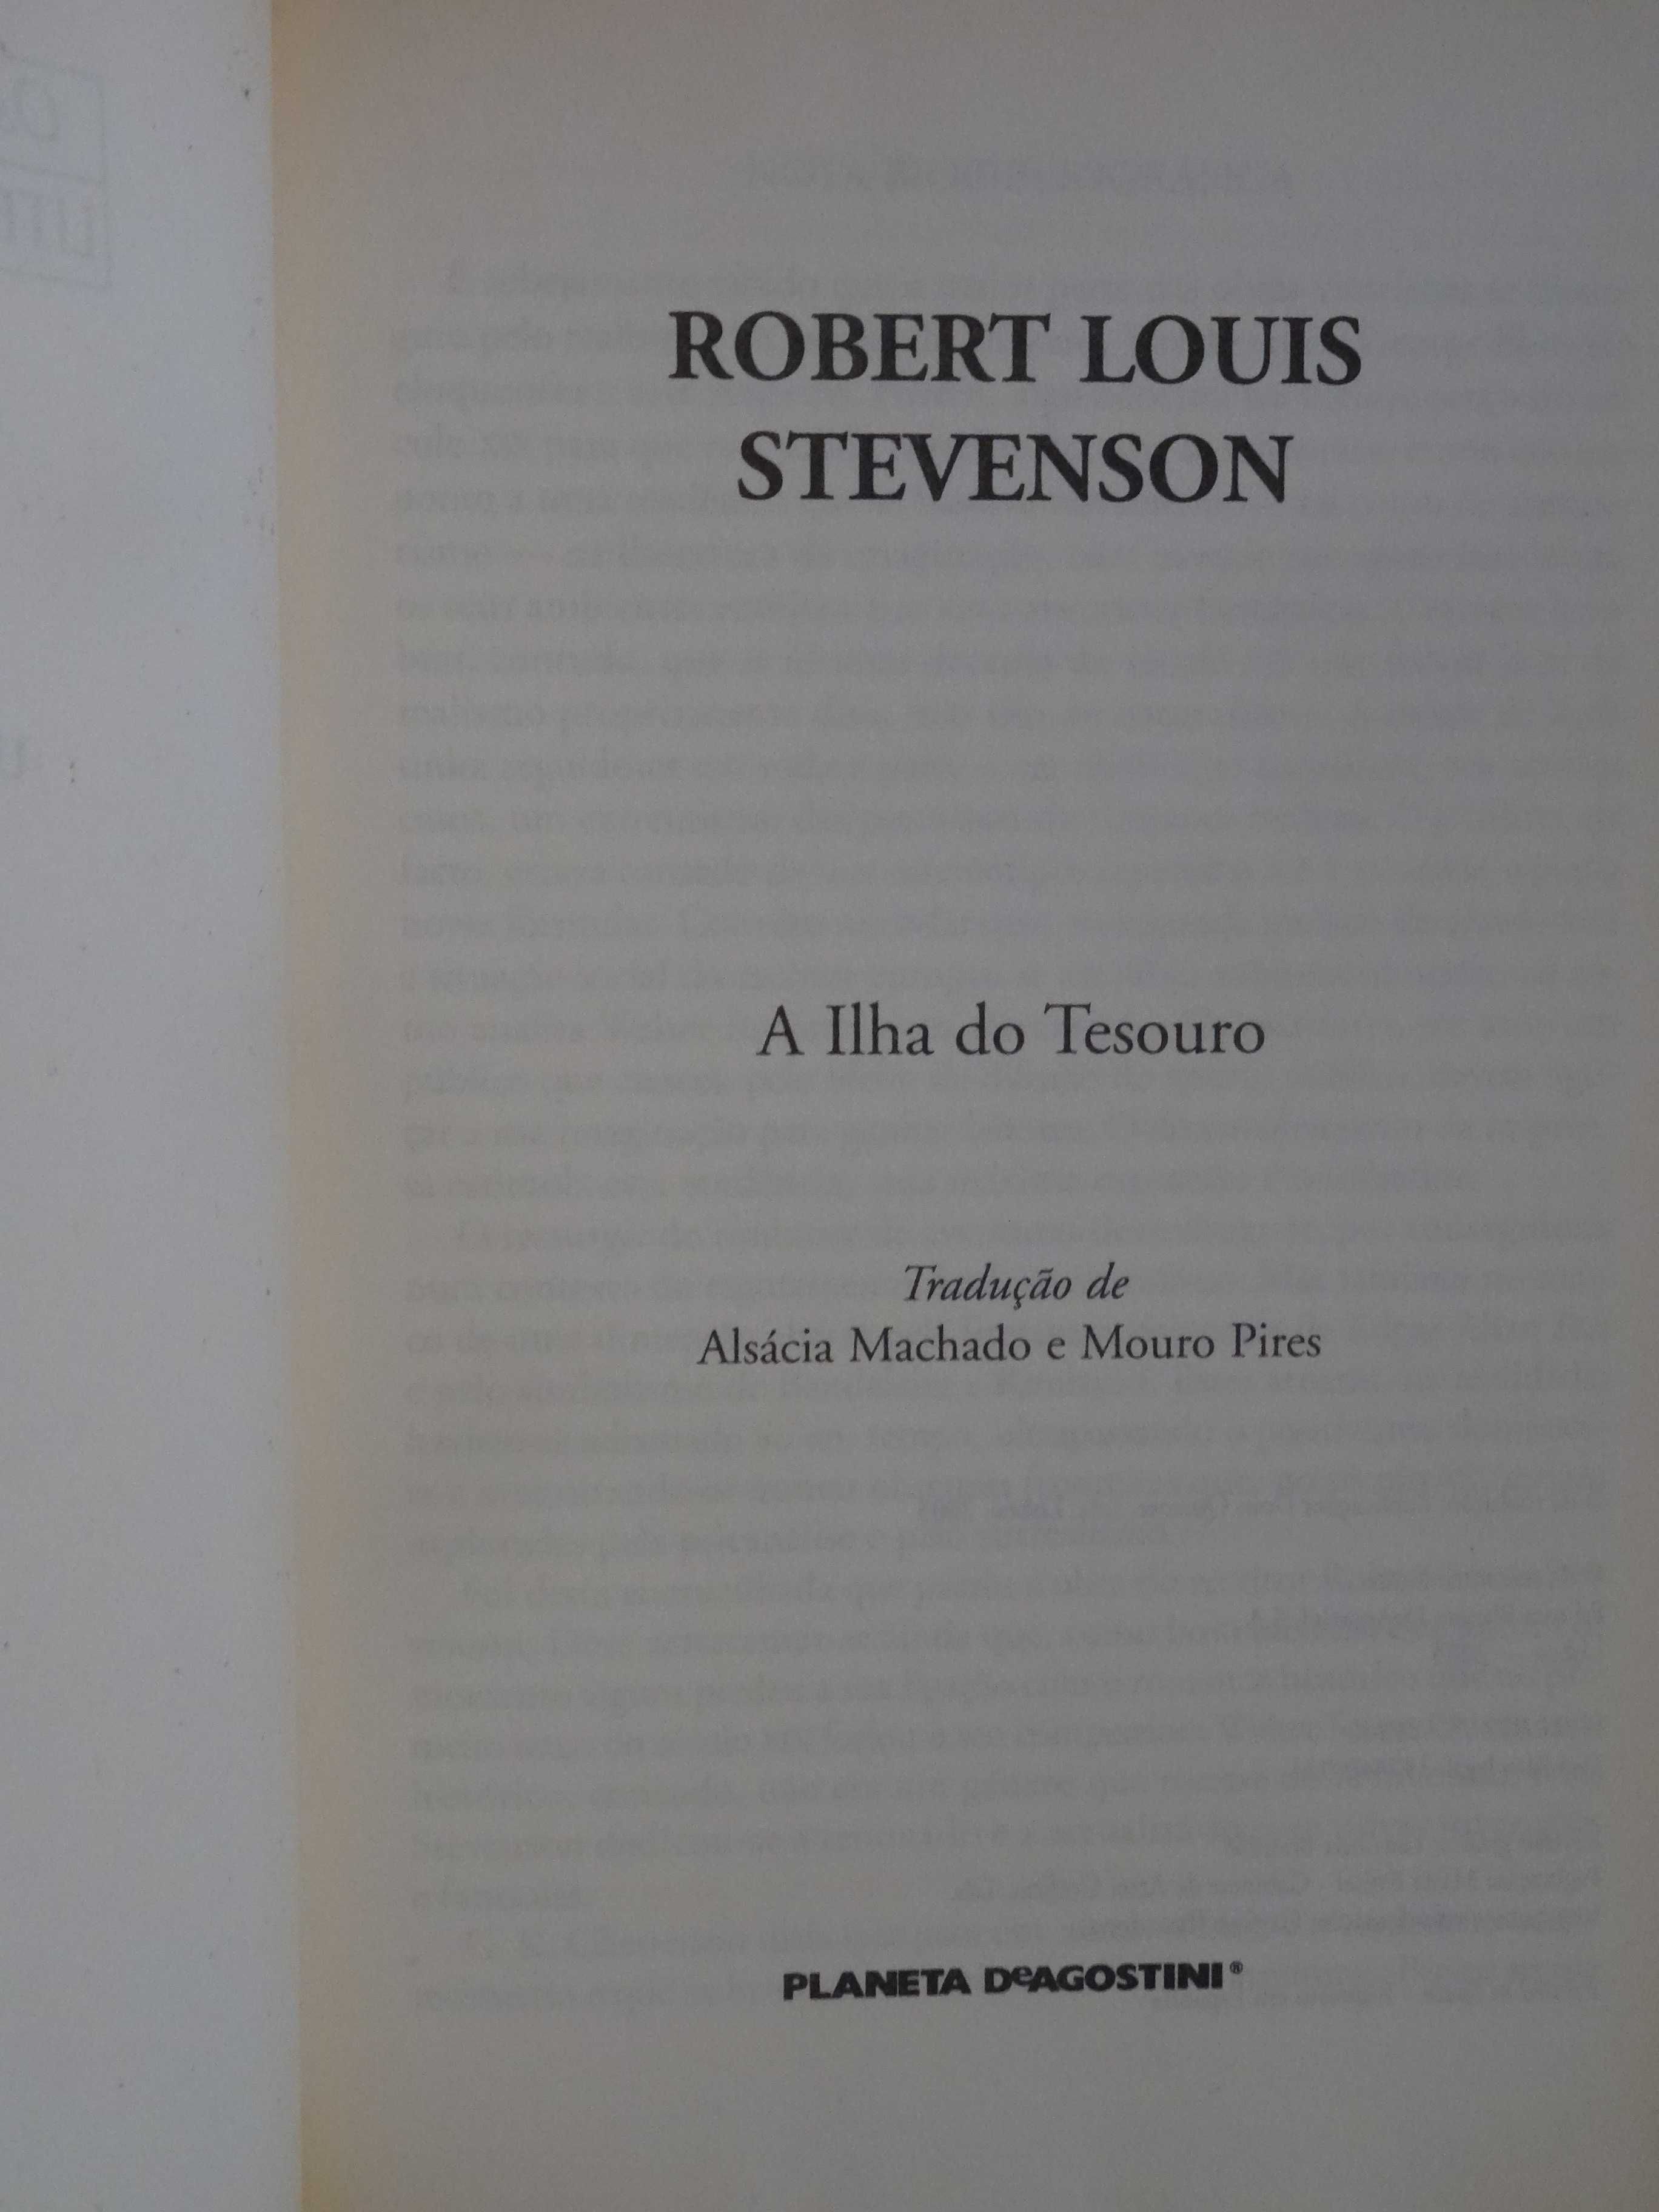 A Ilha do Tesouro de Robert Louis Stevenson